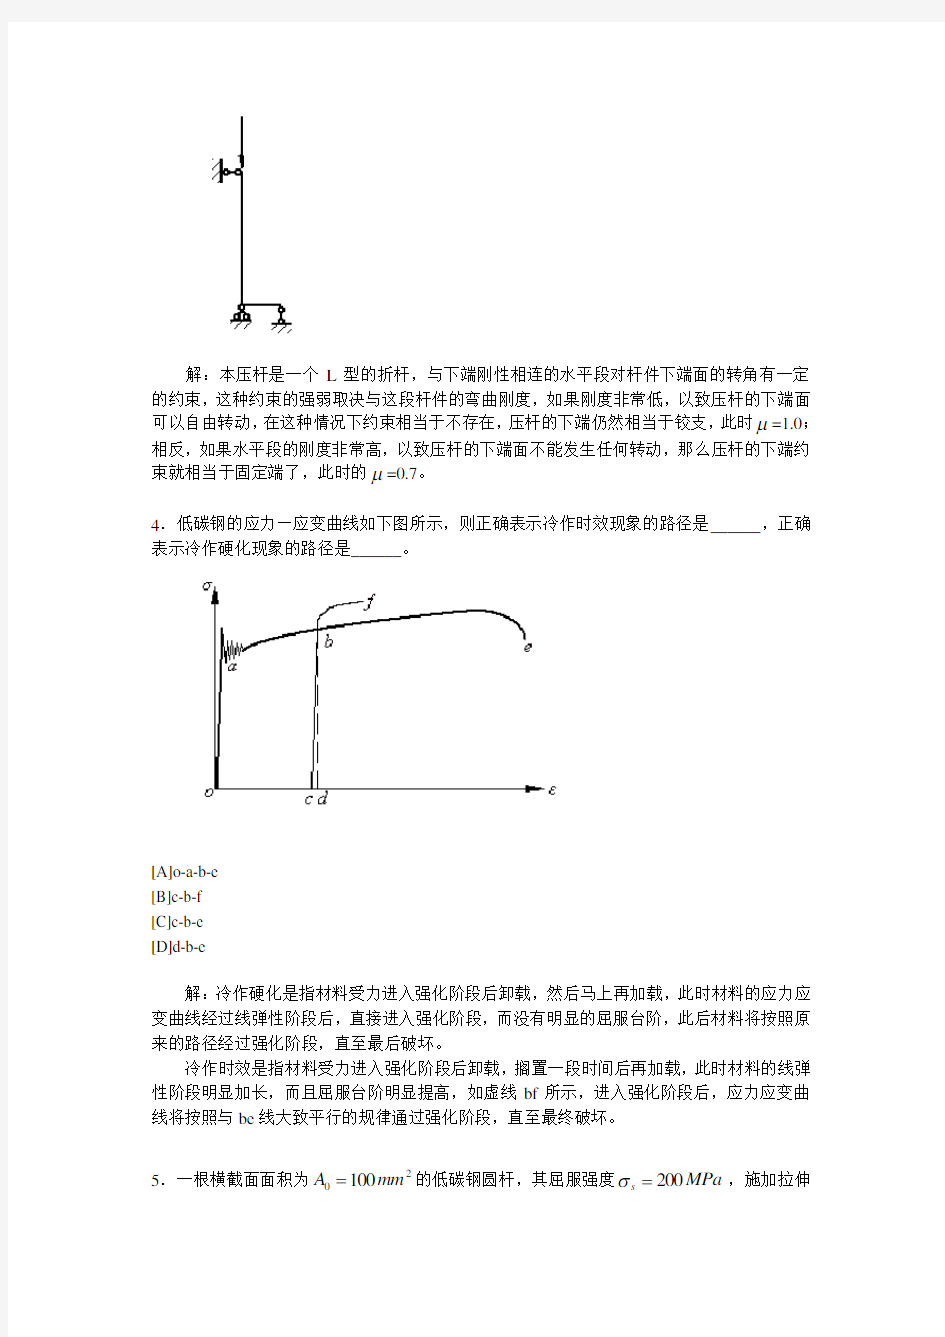 北京建筑工程学院基础力学实验竞赛试题(答案)